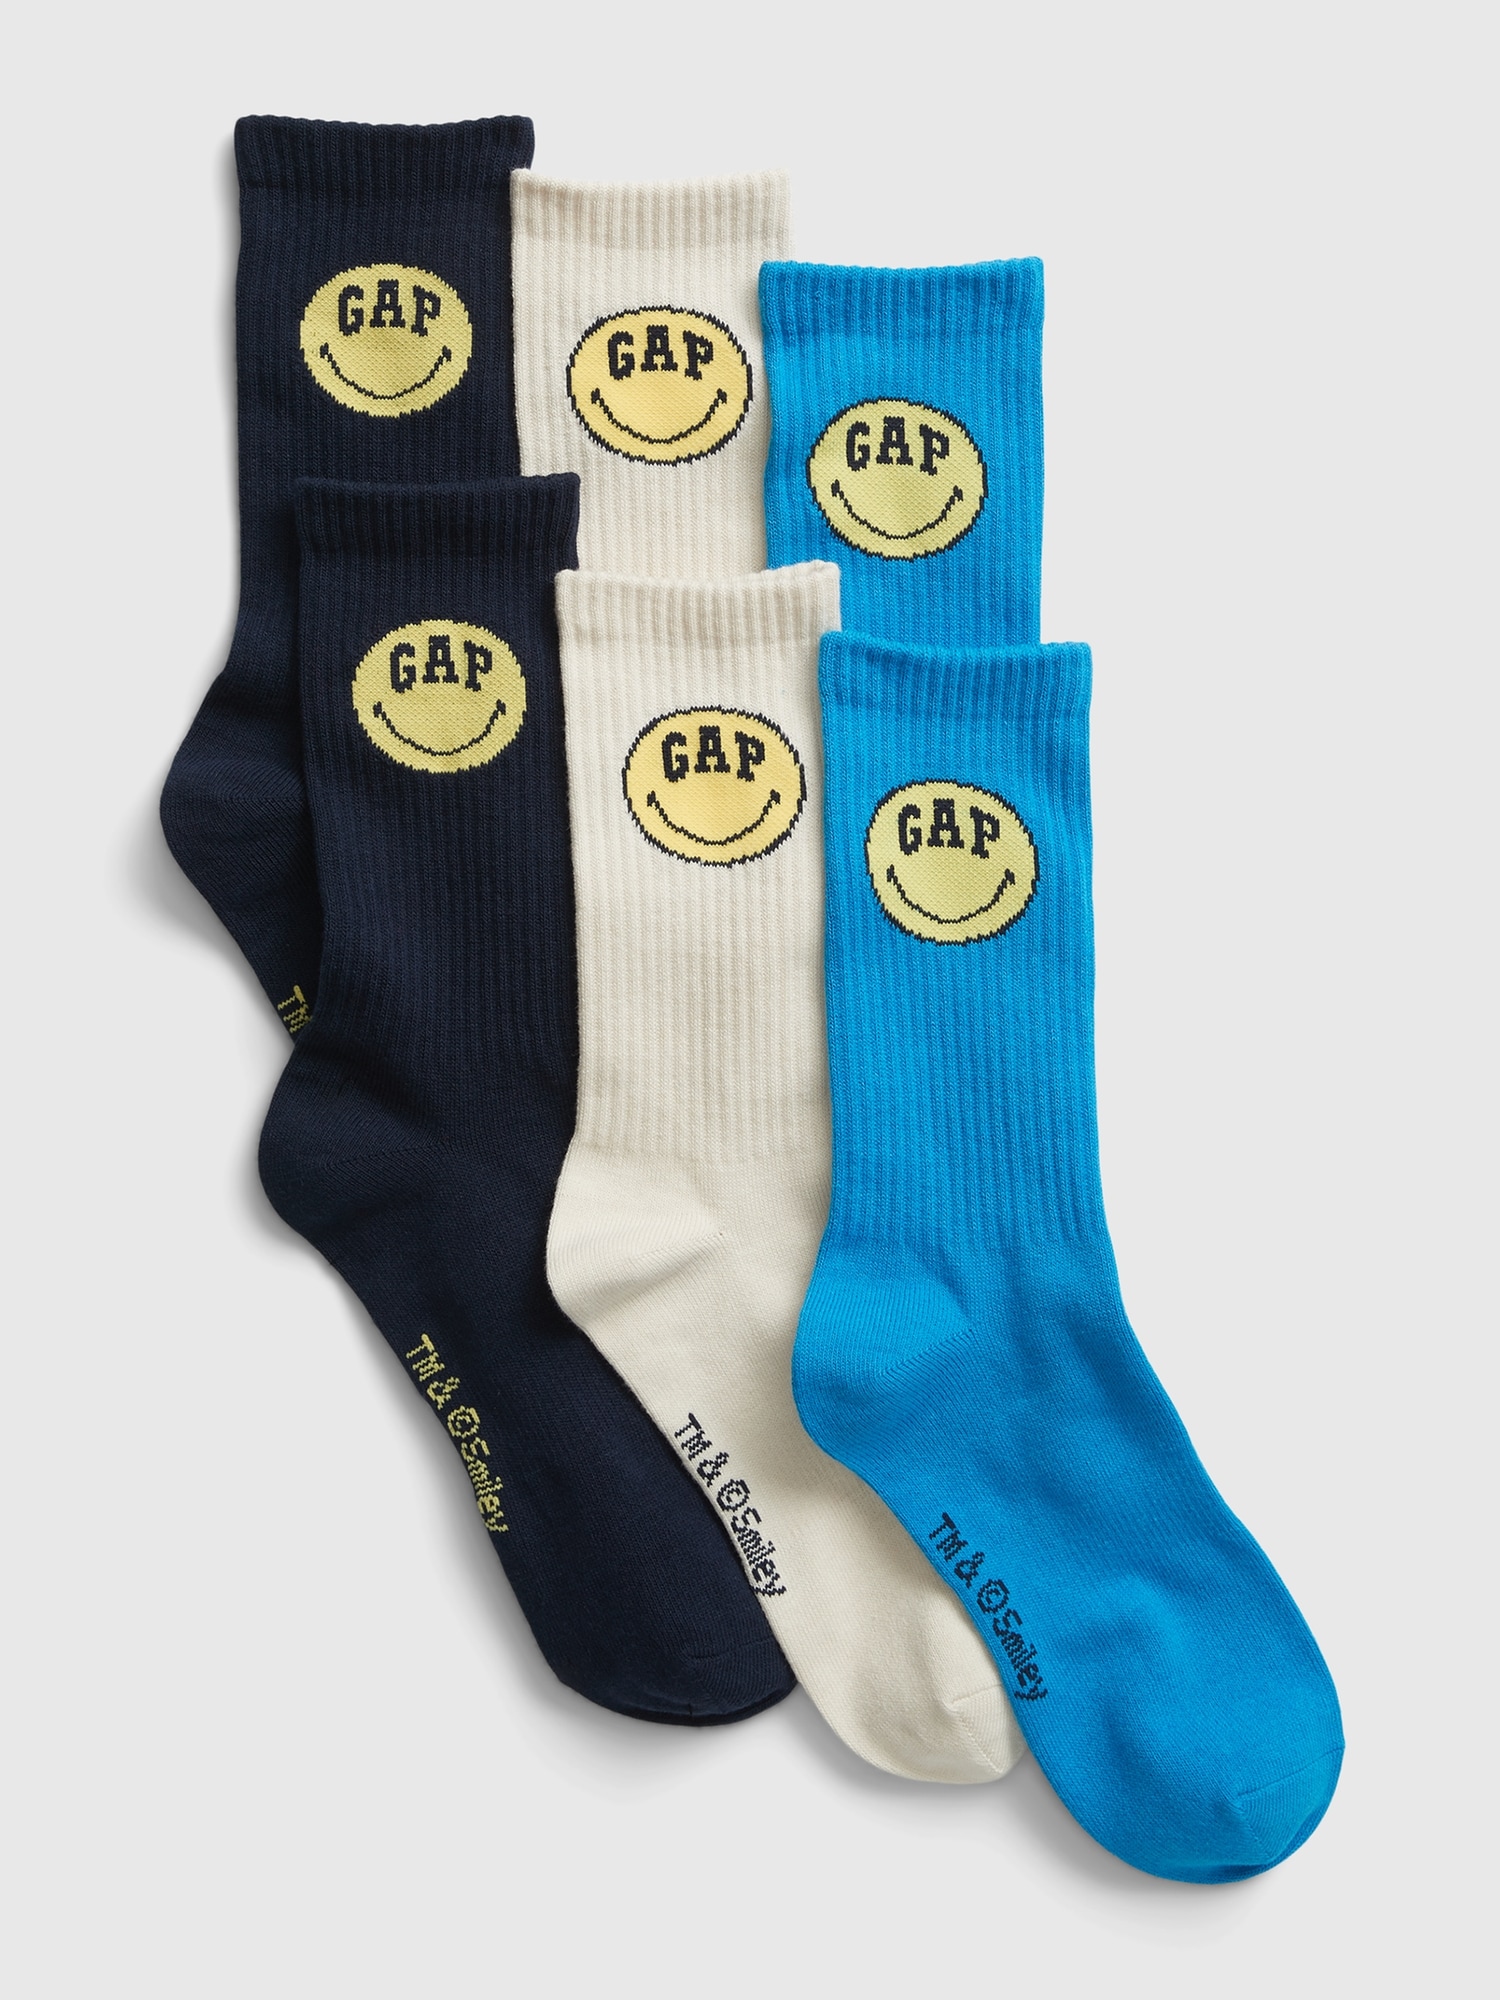 GAP Socks & Smiley, 3 Pairs® - Men